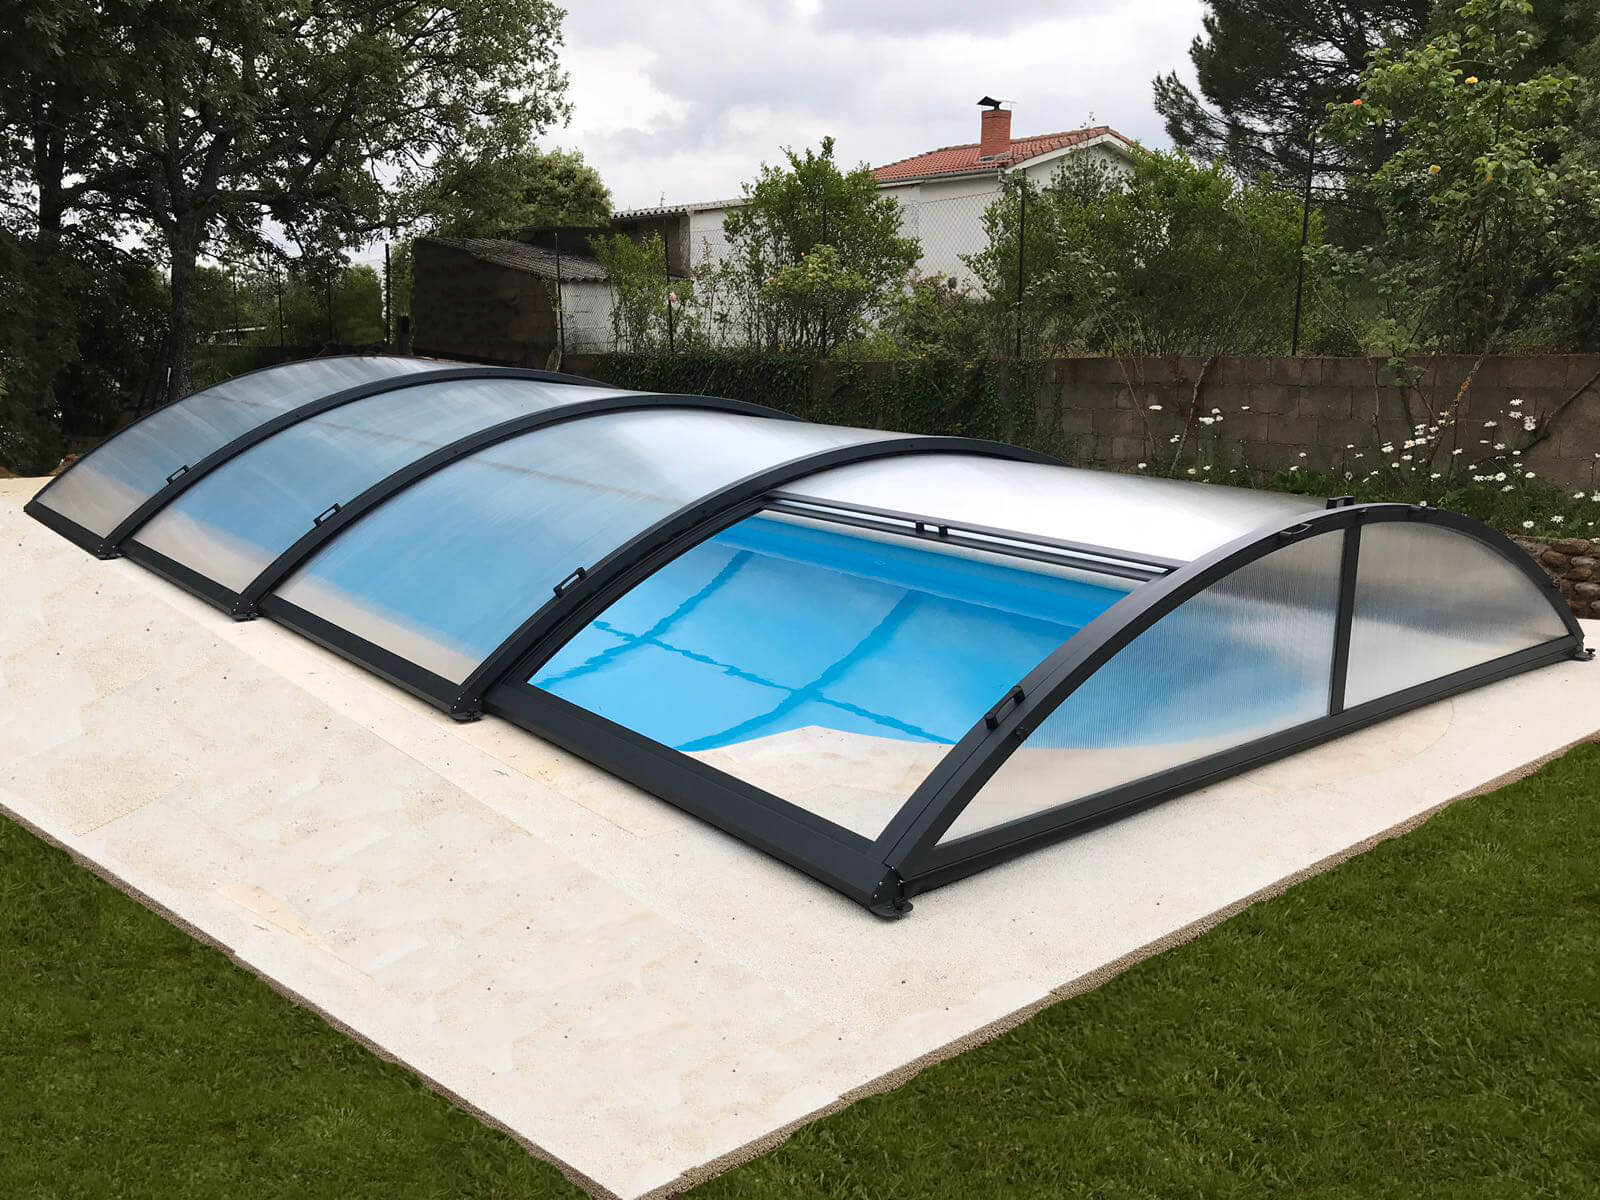 Cubierta Teide: Cerramiento bajo y telescópico para piscina en León exterior